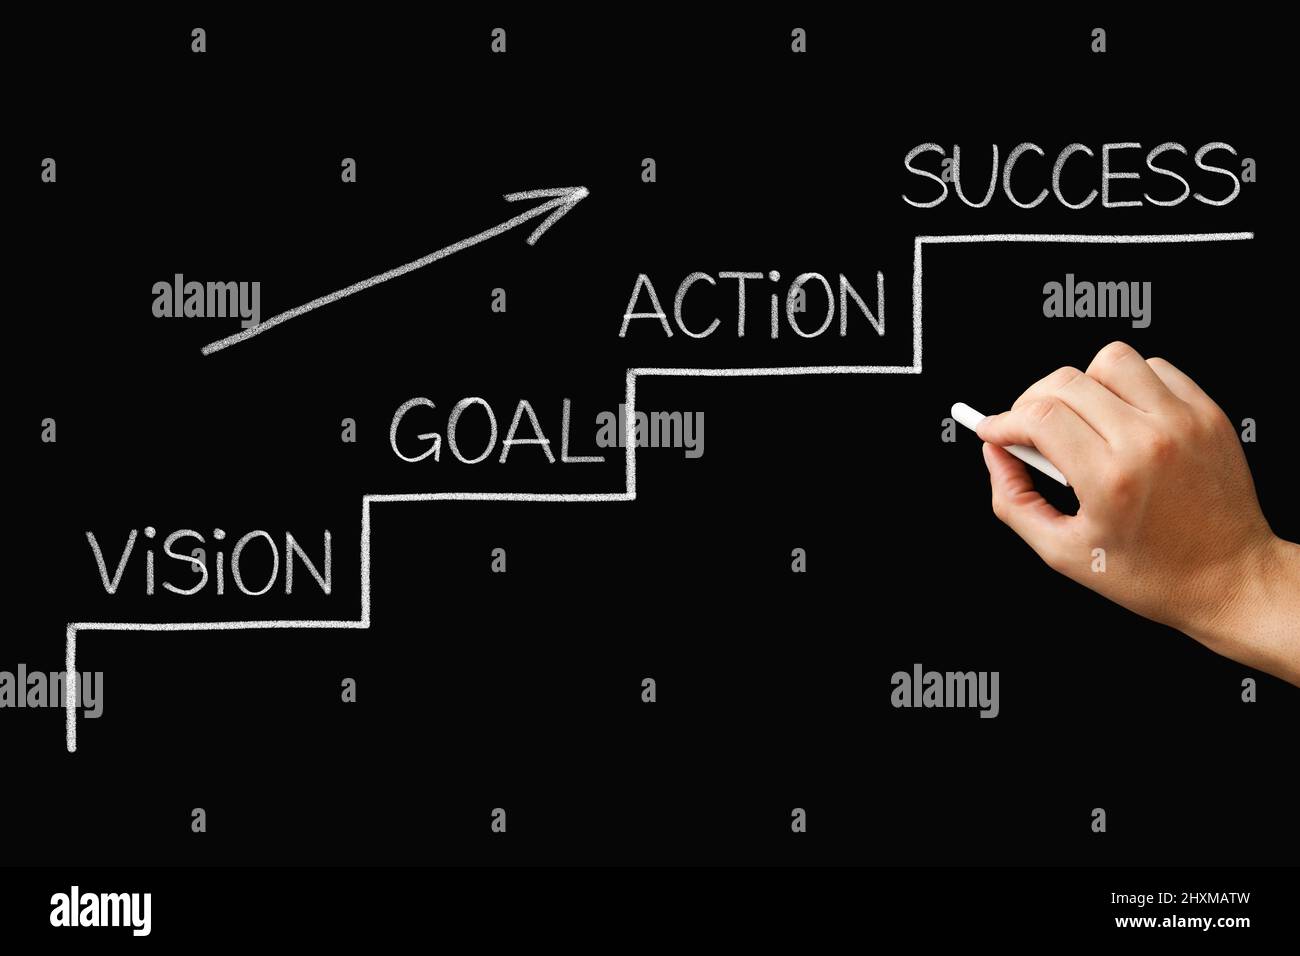 Disegno manuale di una scala al concetto di successo con i punti dalla visione attraverso la regolazione degli obiettivi, l'azione e il raggiungimento del successo. Foto Stock